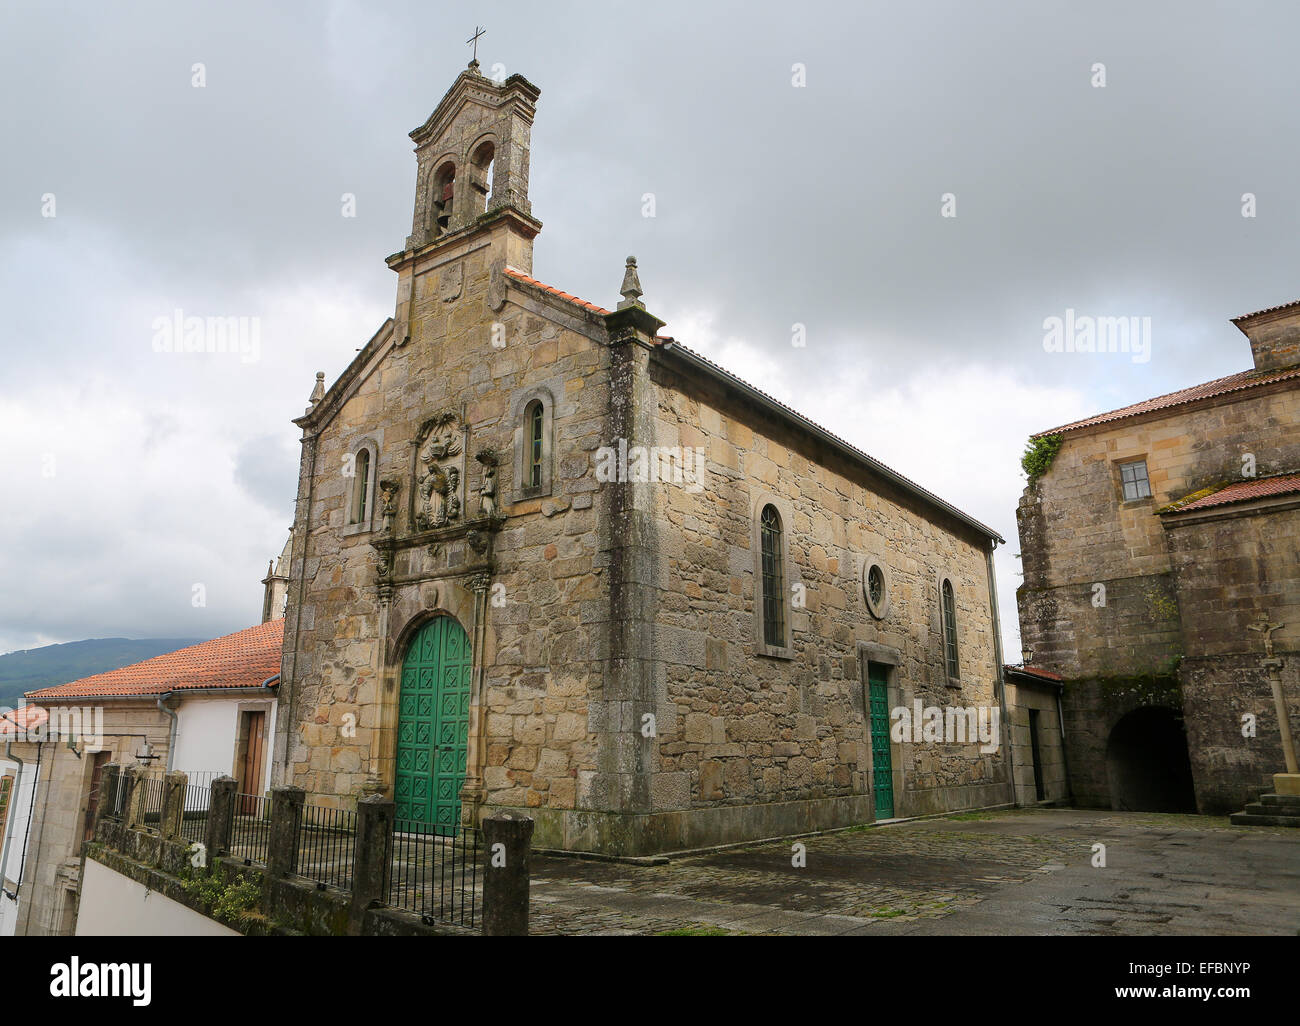 La Chiesa nel quartiere storico di Tui, una città di confine con il Portogallo nella regione della Galizia, Spagna. Foto Stock